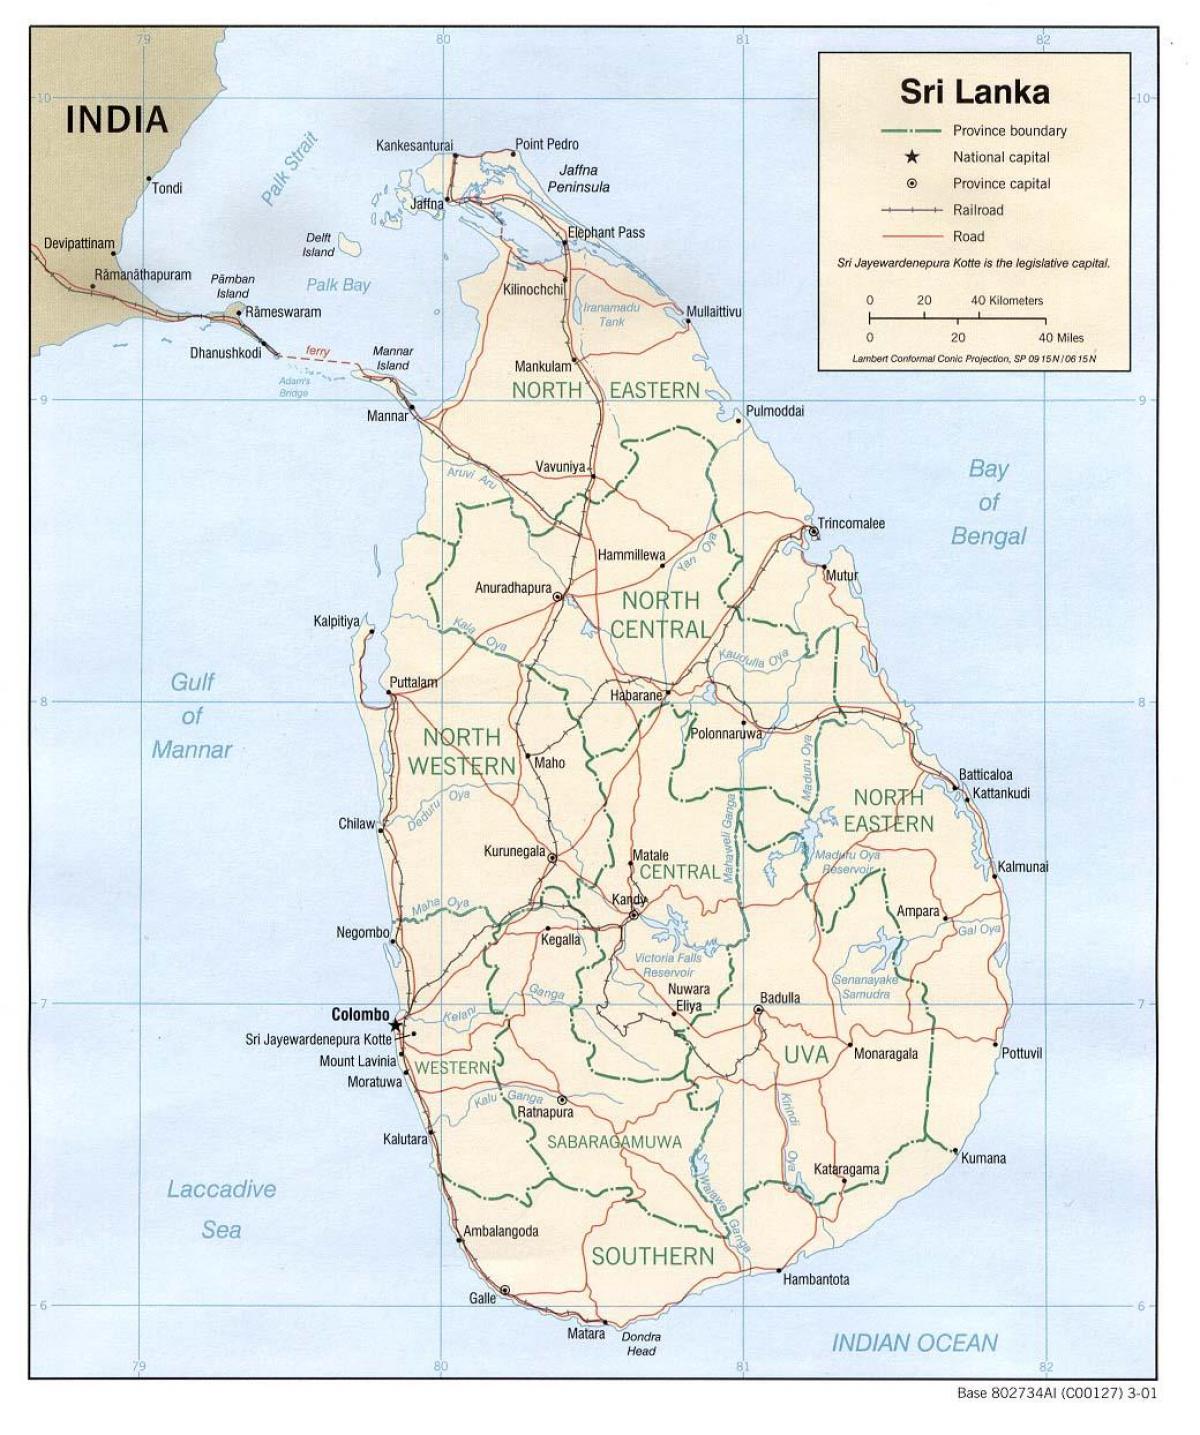 Sri Lanka bus peta